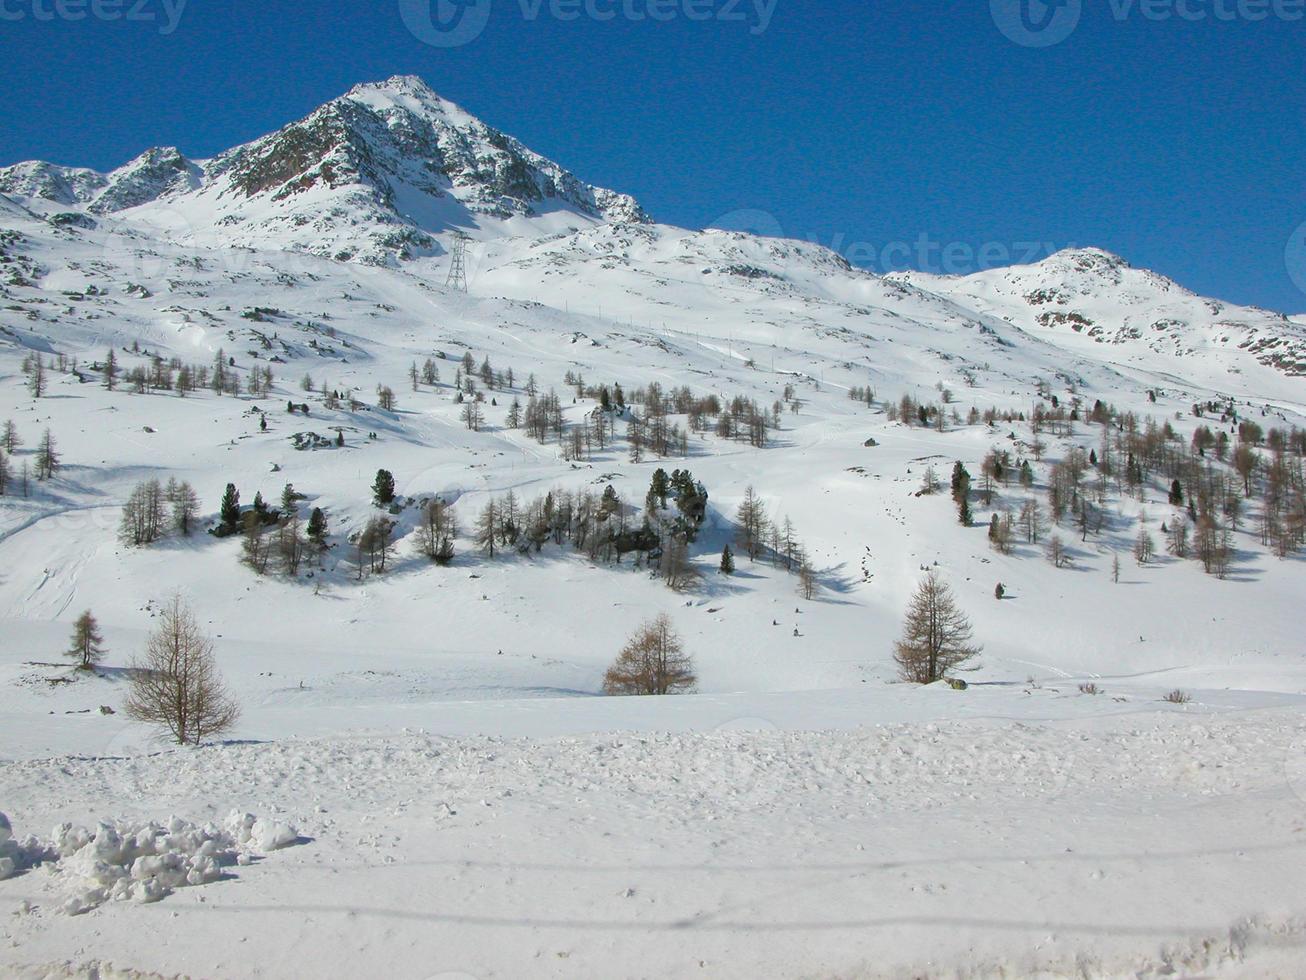 chaîne de montagnes du piz bernina dans les alpes rethiques suisses dans le canton gr photo